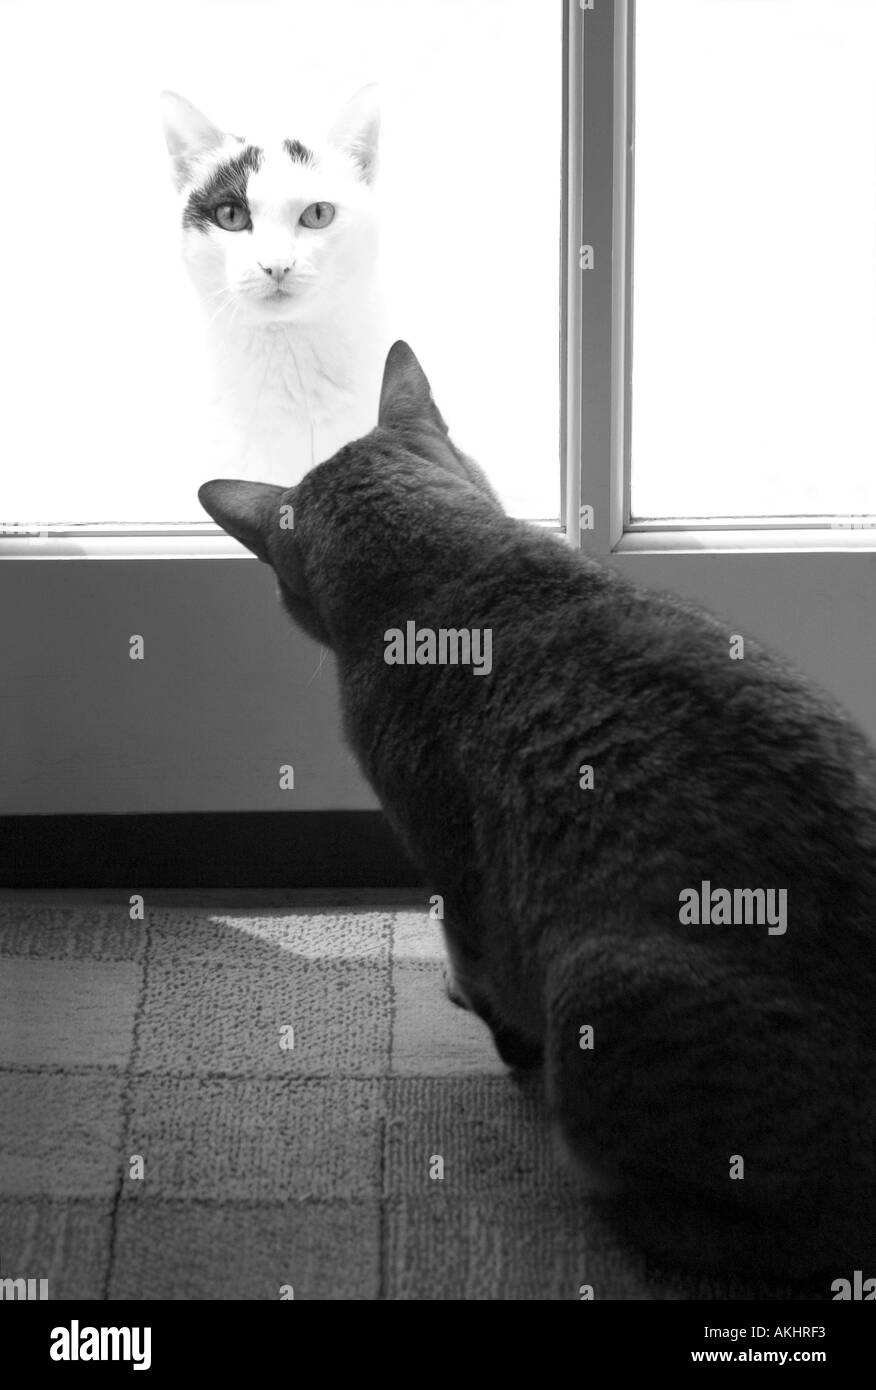 Immagine divertente di due gatti uno interno ed uno che guarda dall'esterno Foto Stock